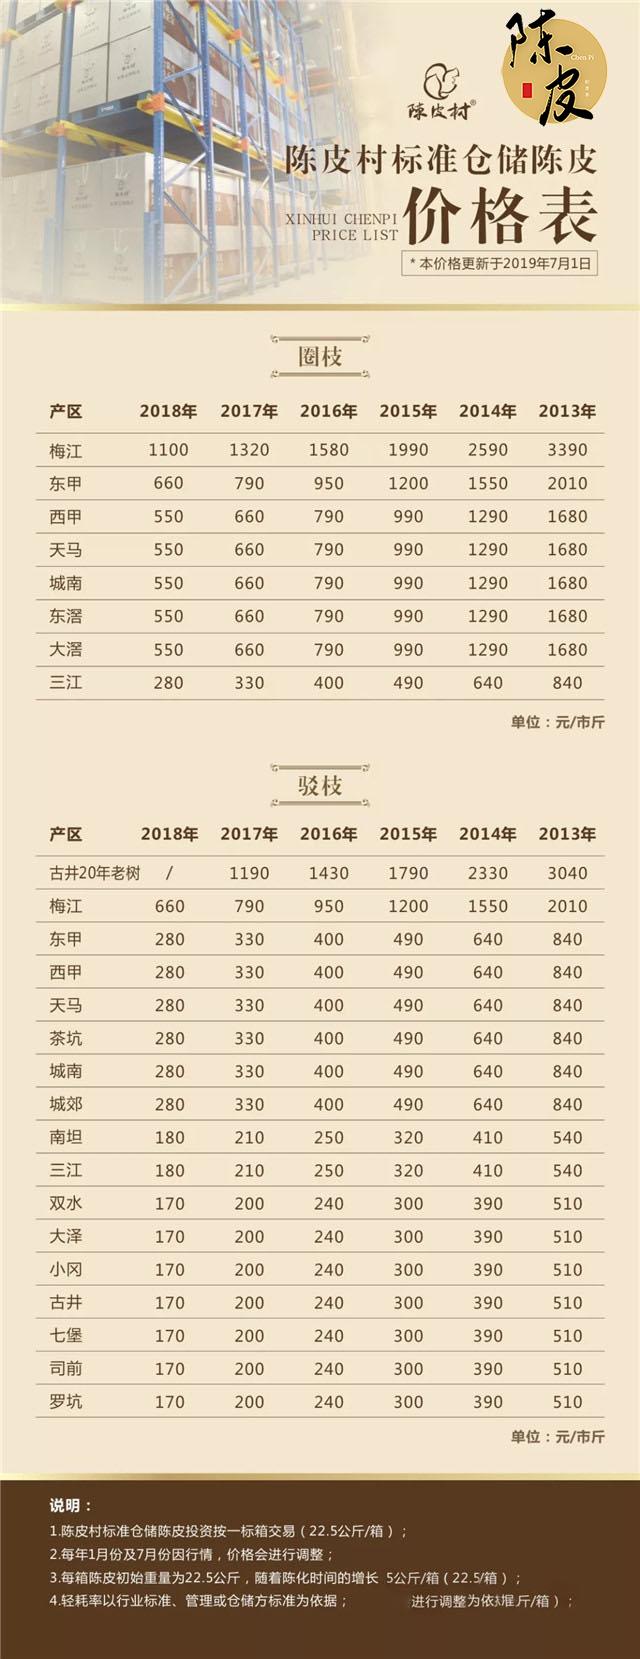 2020年，陈皮村标准仓储陈皮价格将全线上调